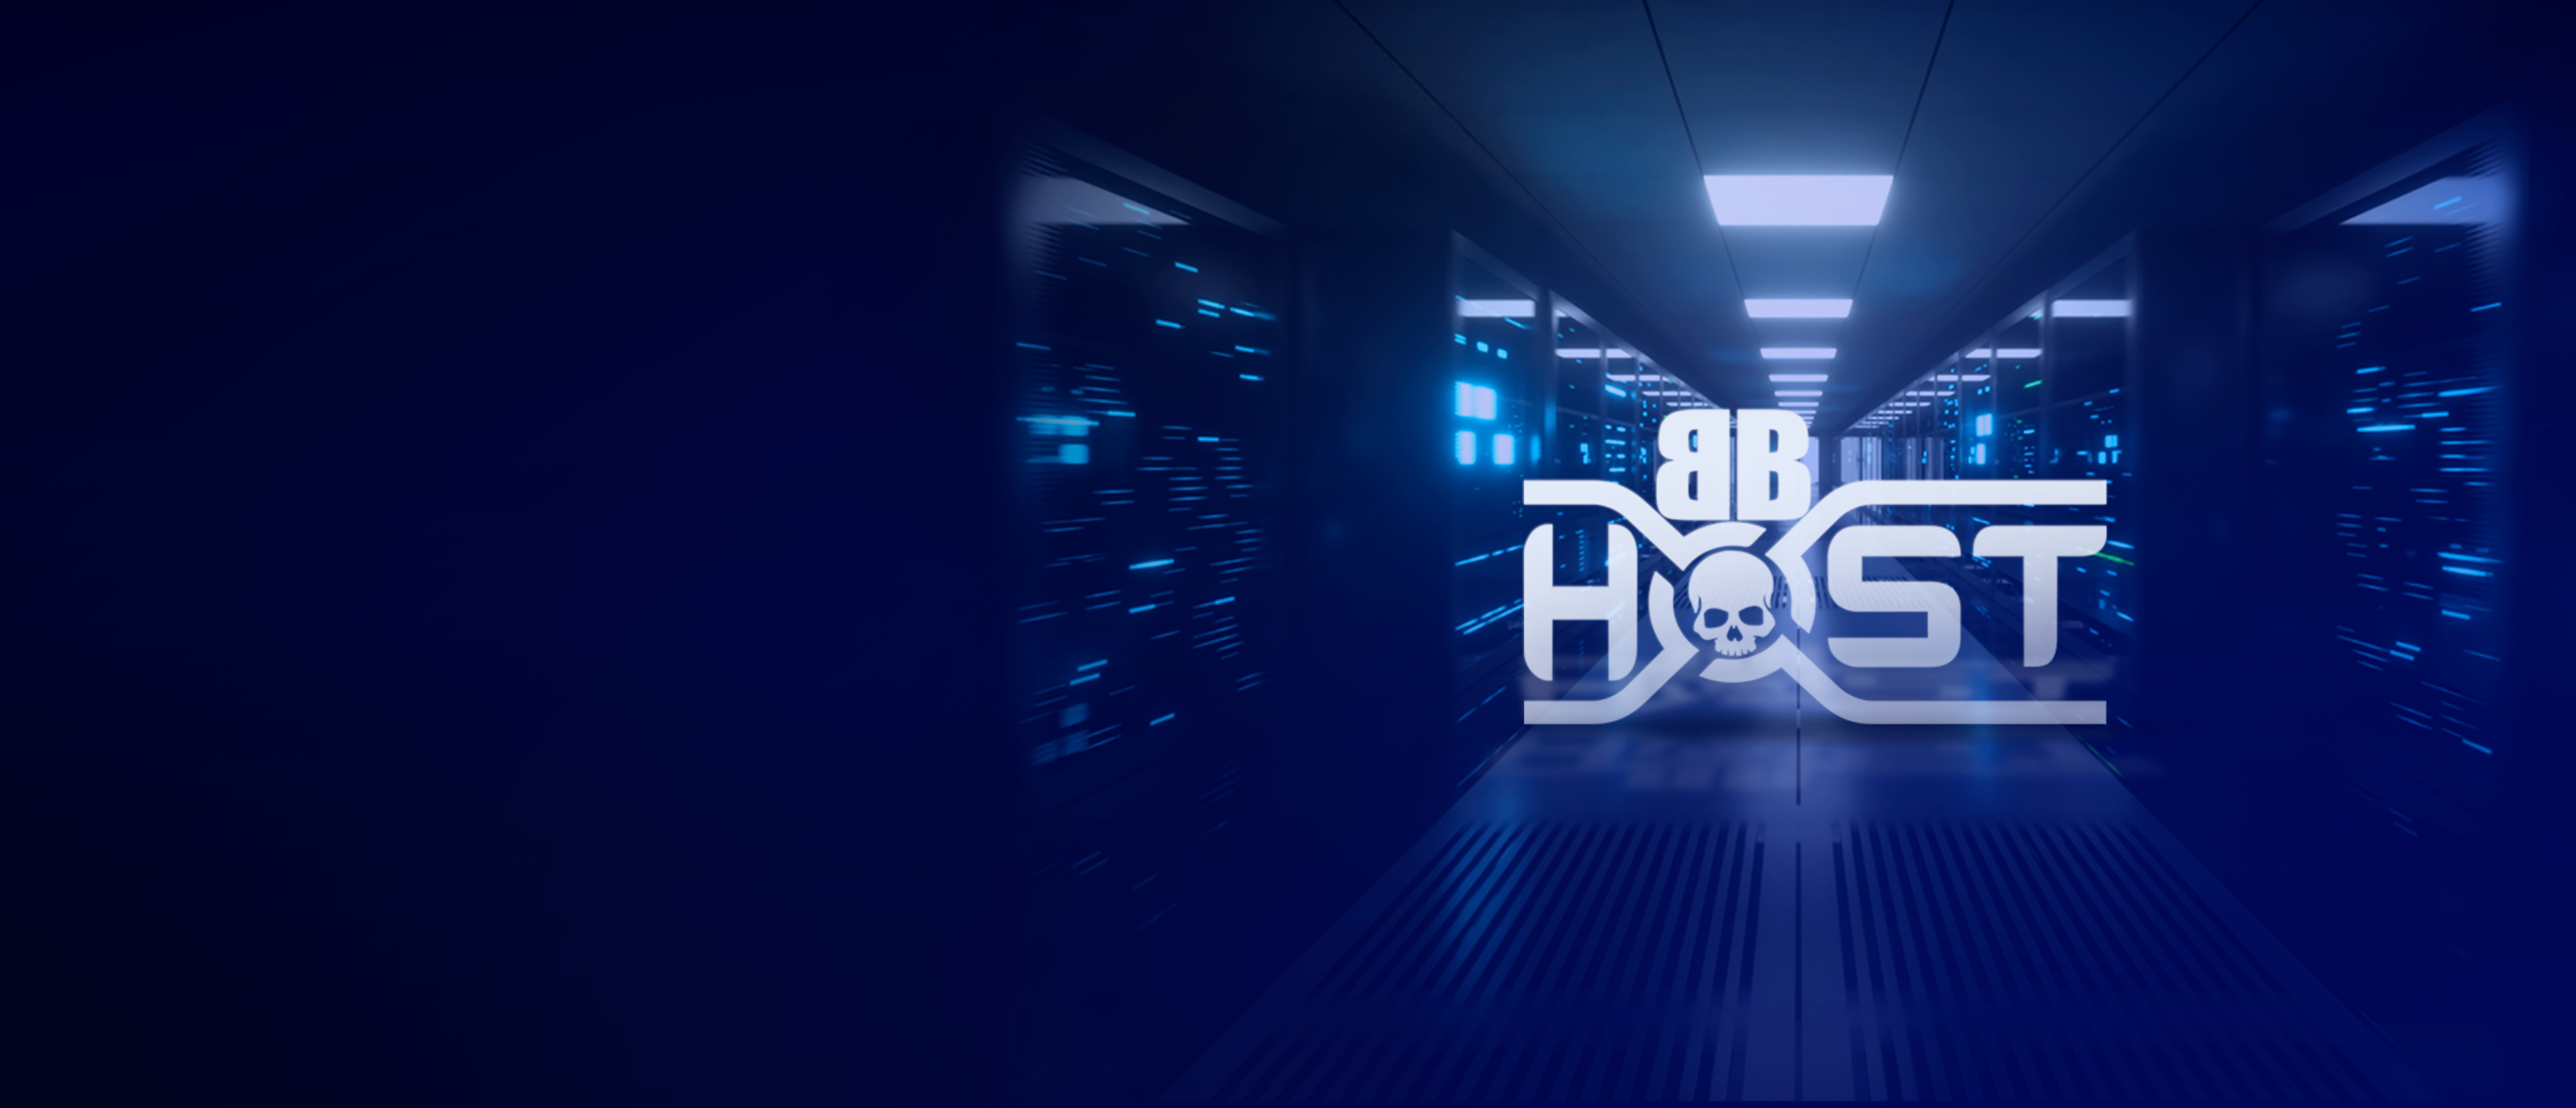 BB Host - datacenter de qualidade!